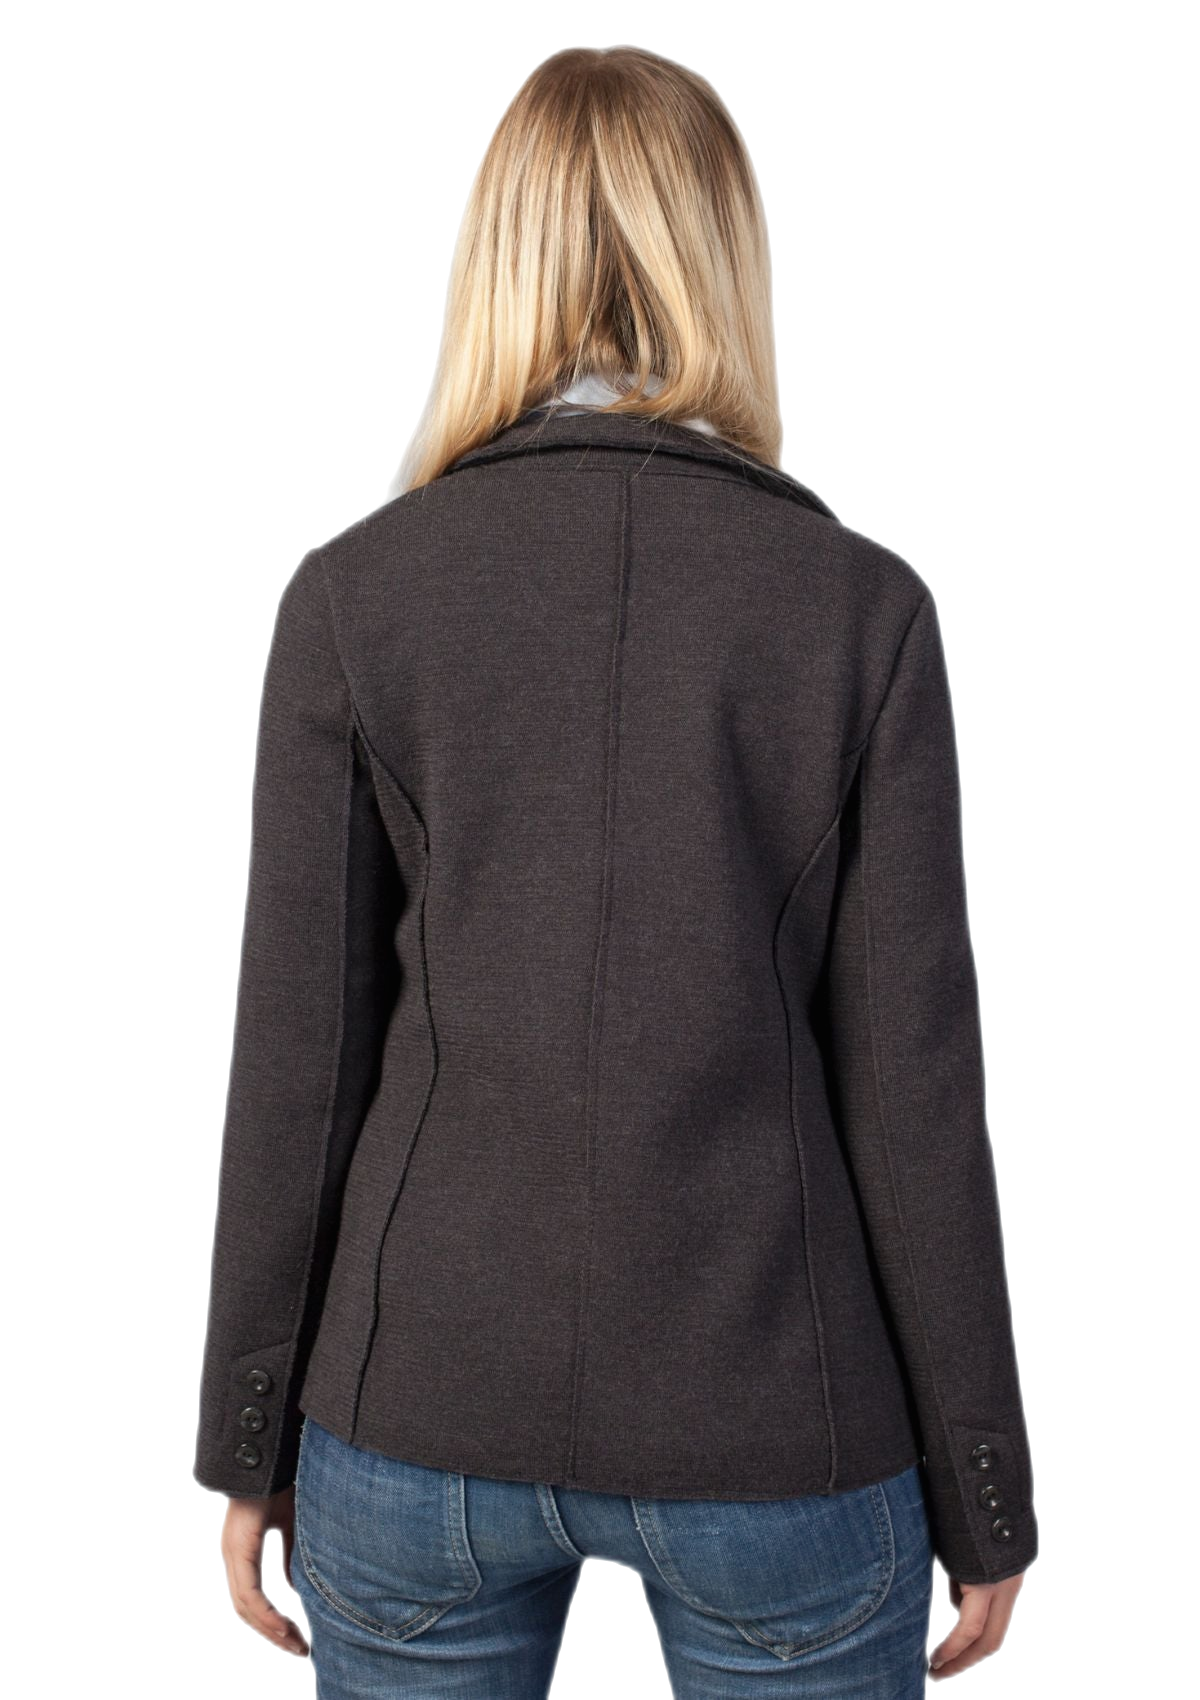 retro giacca donna in lana merino colore grigio antracite